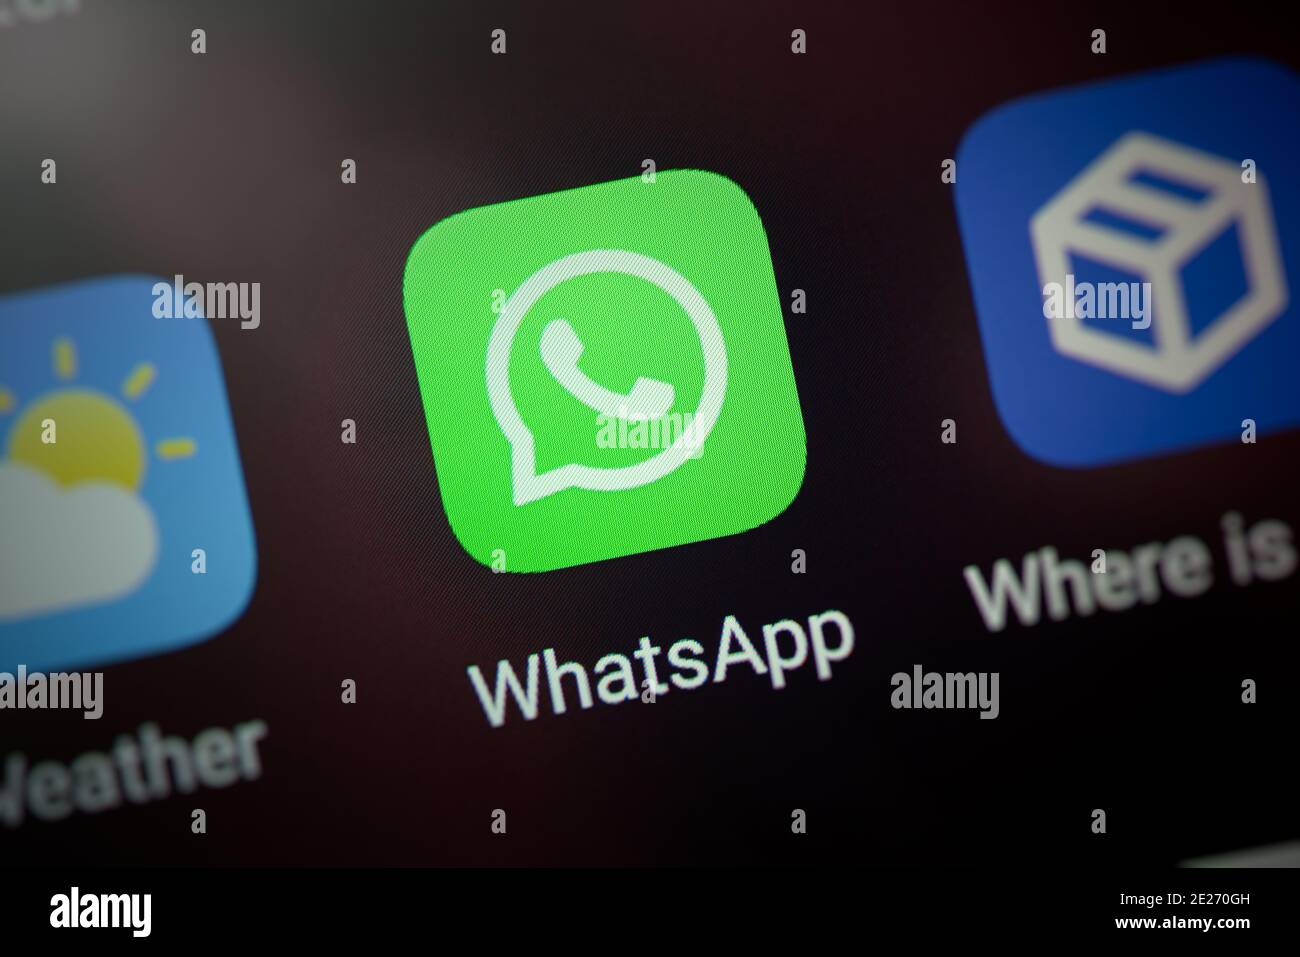 Wroclaw, Polonia - 30 NOVEMBRE 2020: Icona WhatsApp sul sistema Android. WhatsApp è un servizio di messaggistica istantanea sviluppato da Facebook Foto Stock